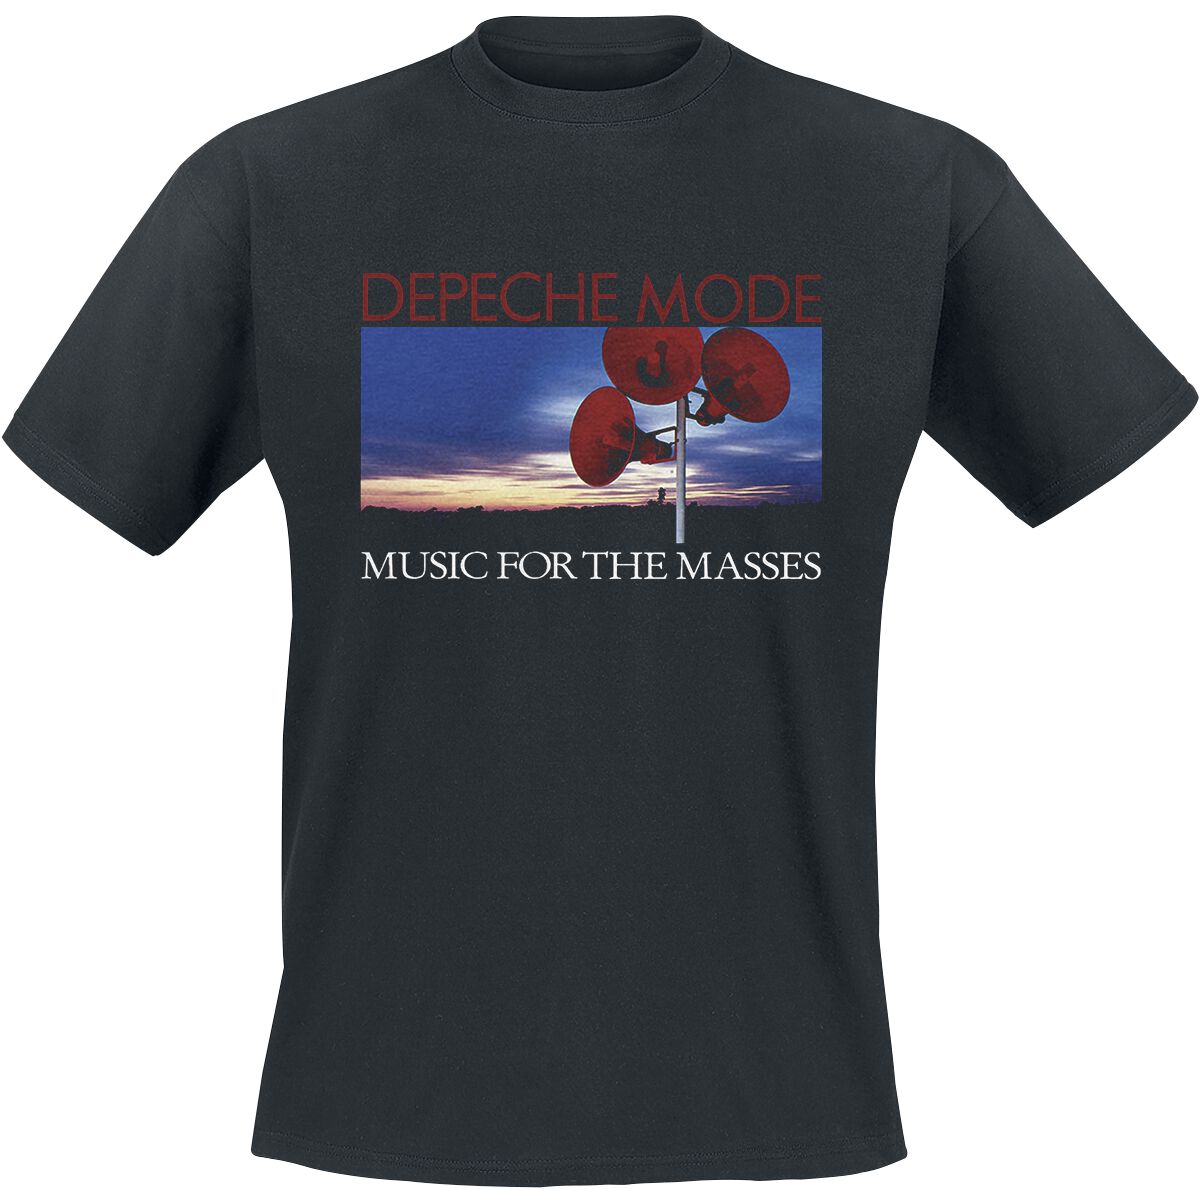 Depeche Mode T-Shirt - Music for the masses - S bis 4XL - für Männer - Größe L - schwarz  - Lizenziertes Merchandise!